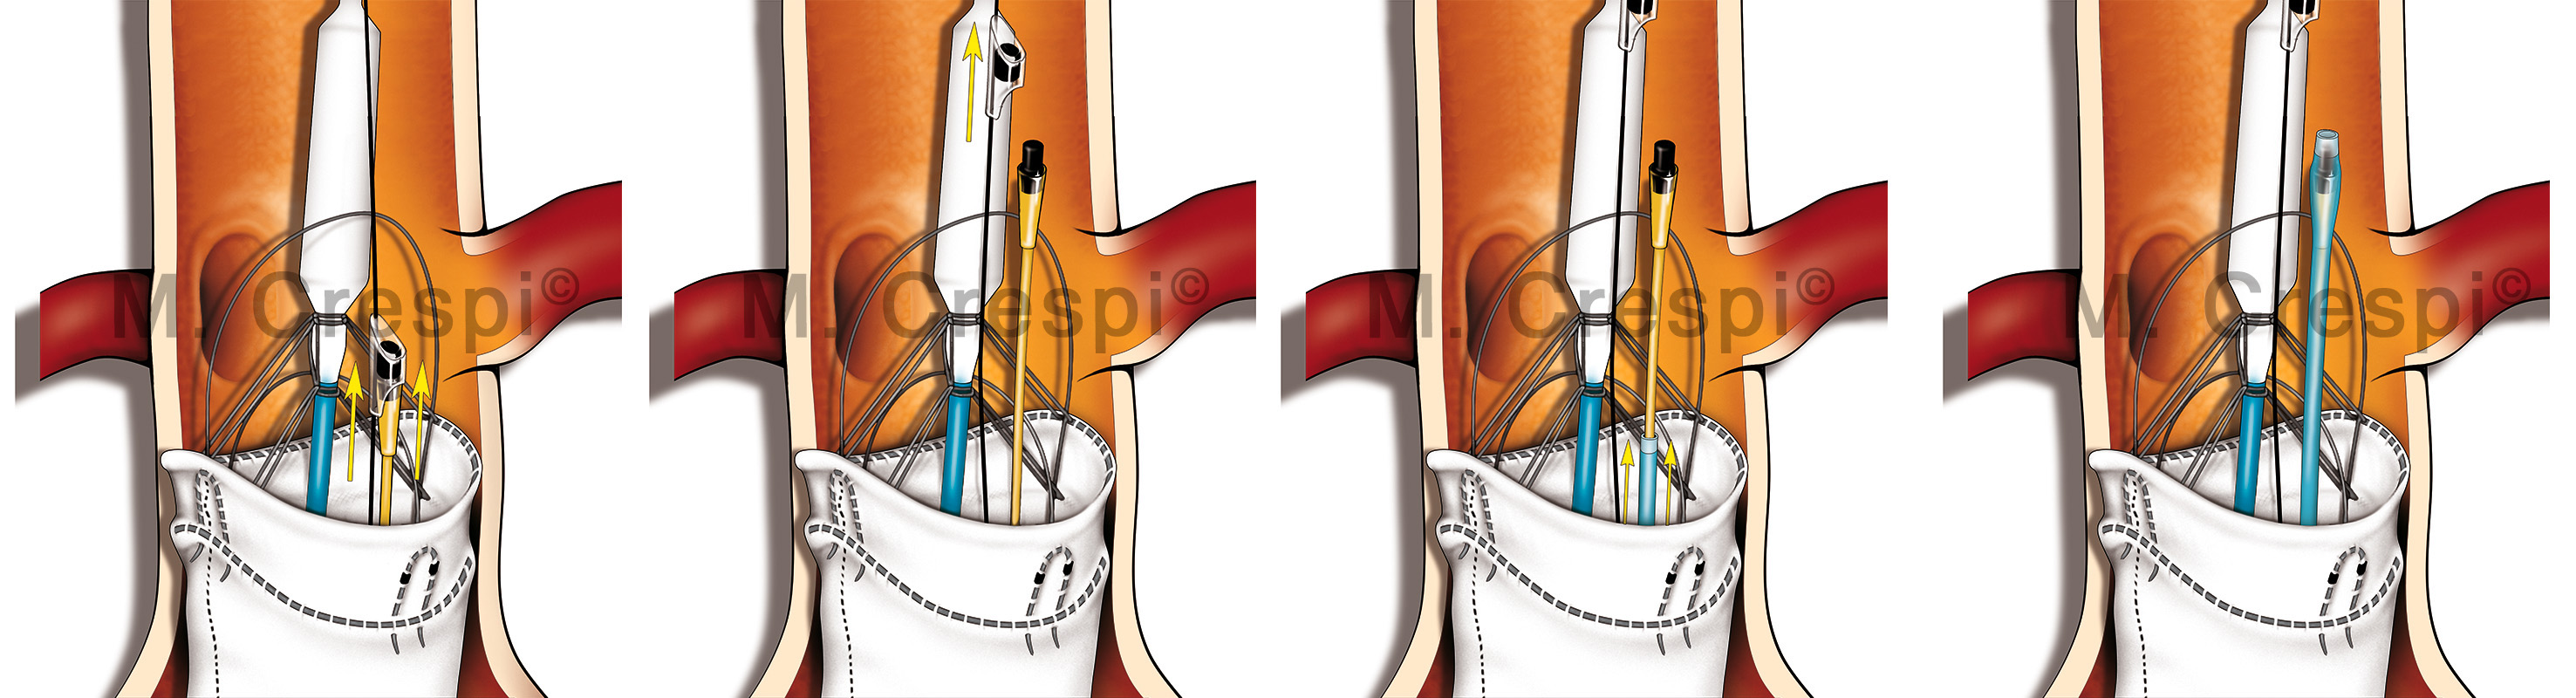 Anaconda endovascular prosthesis